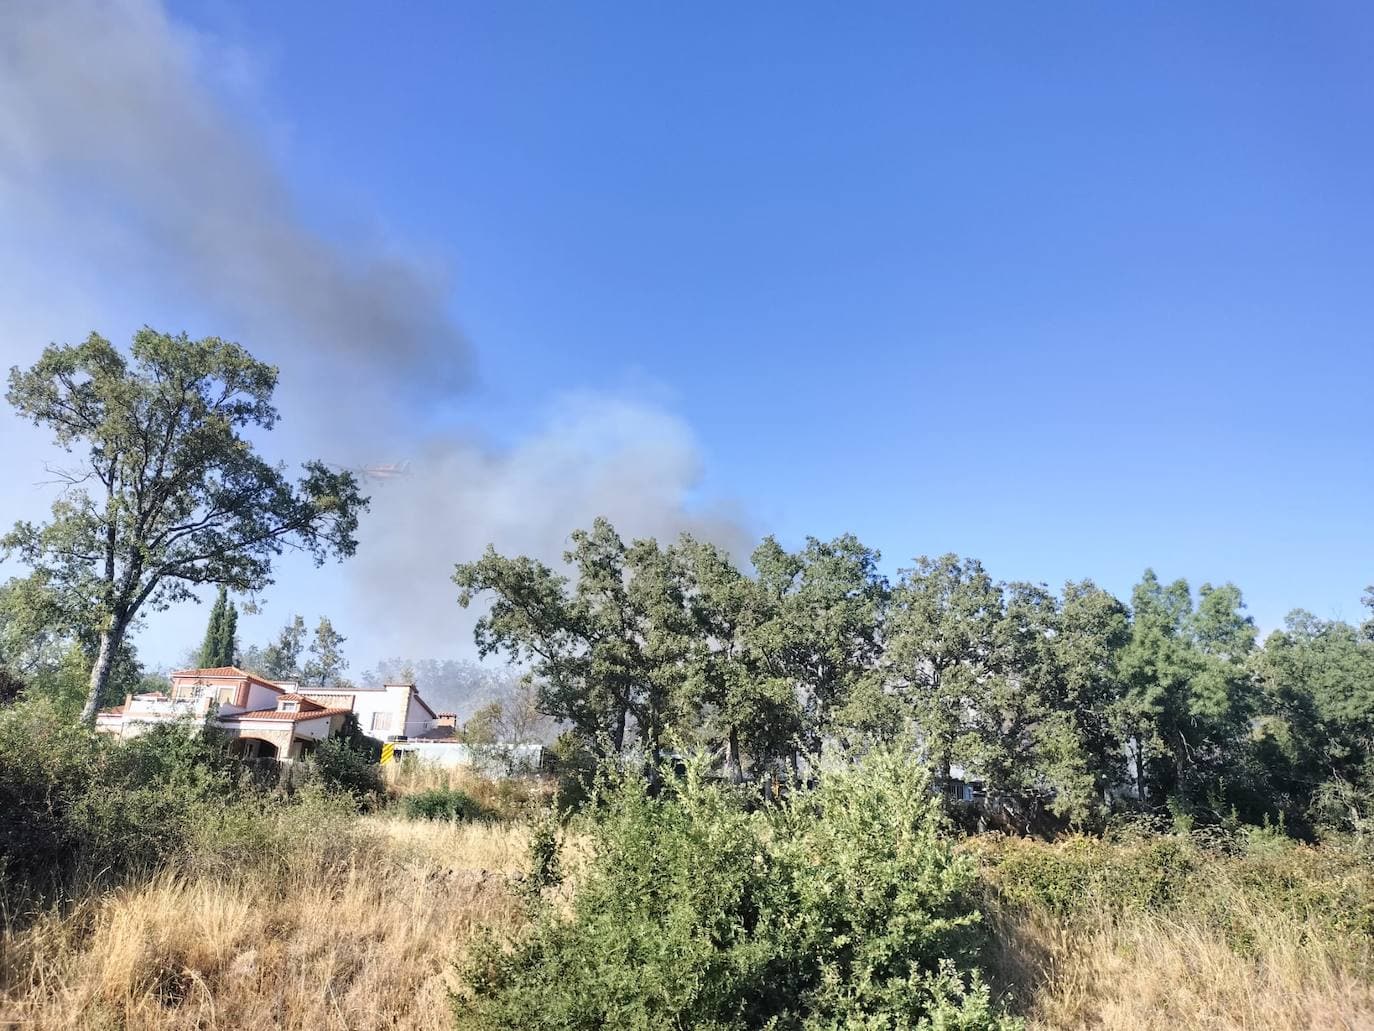 Las imágenes del incendio que asustó a los vecinos de Navacarros y Vallejera